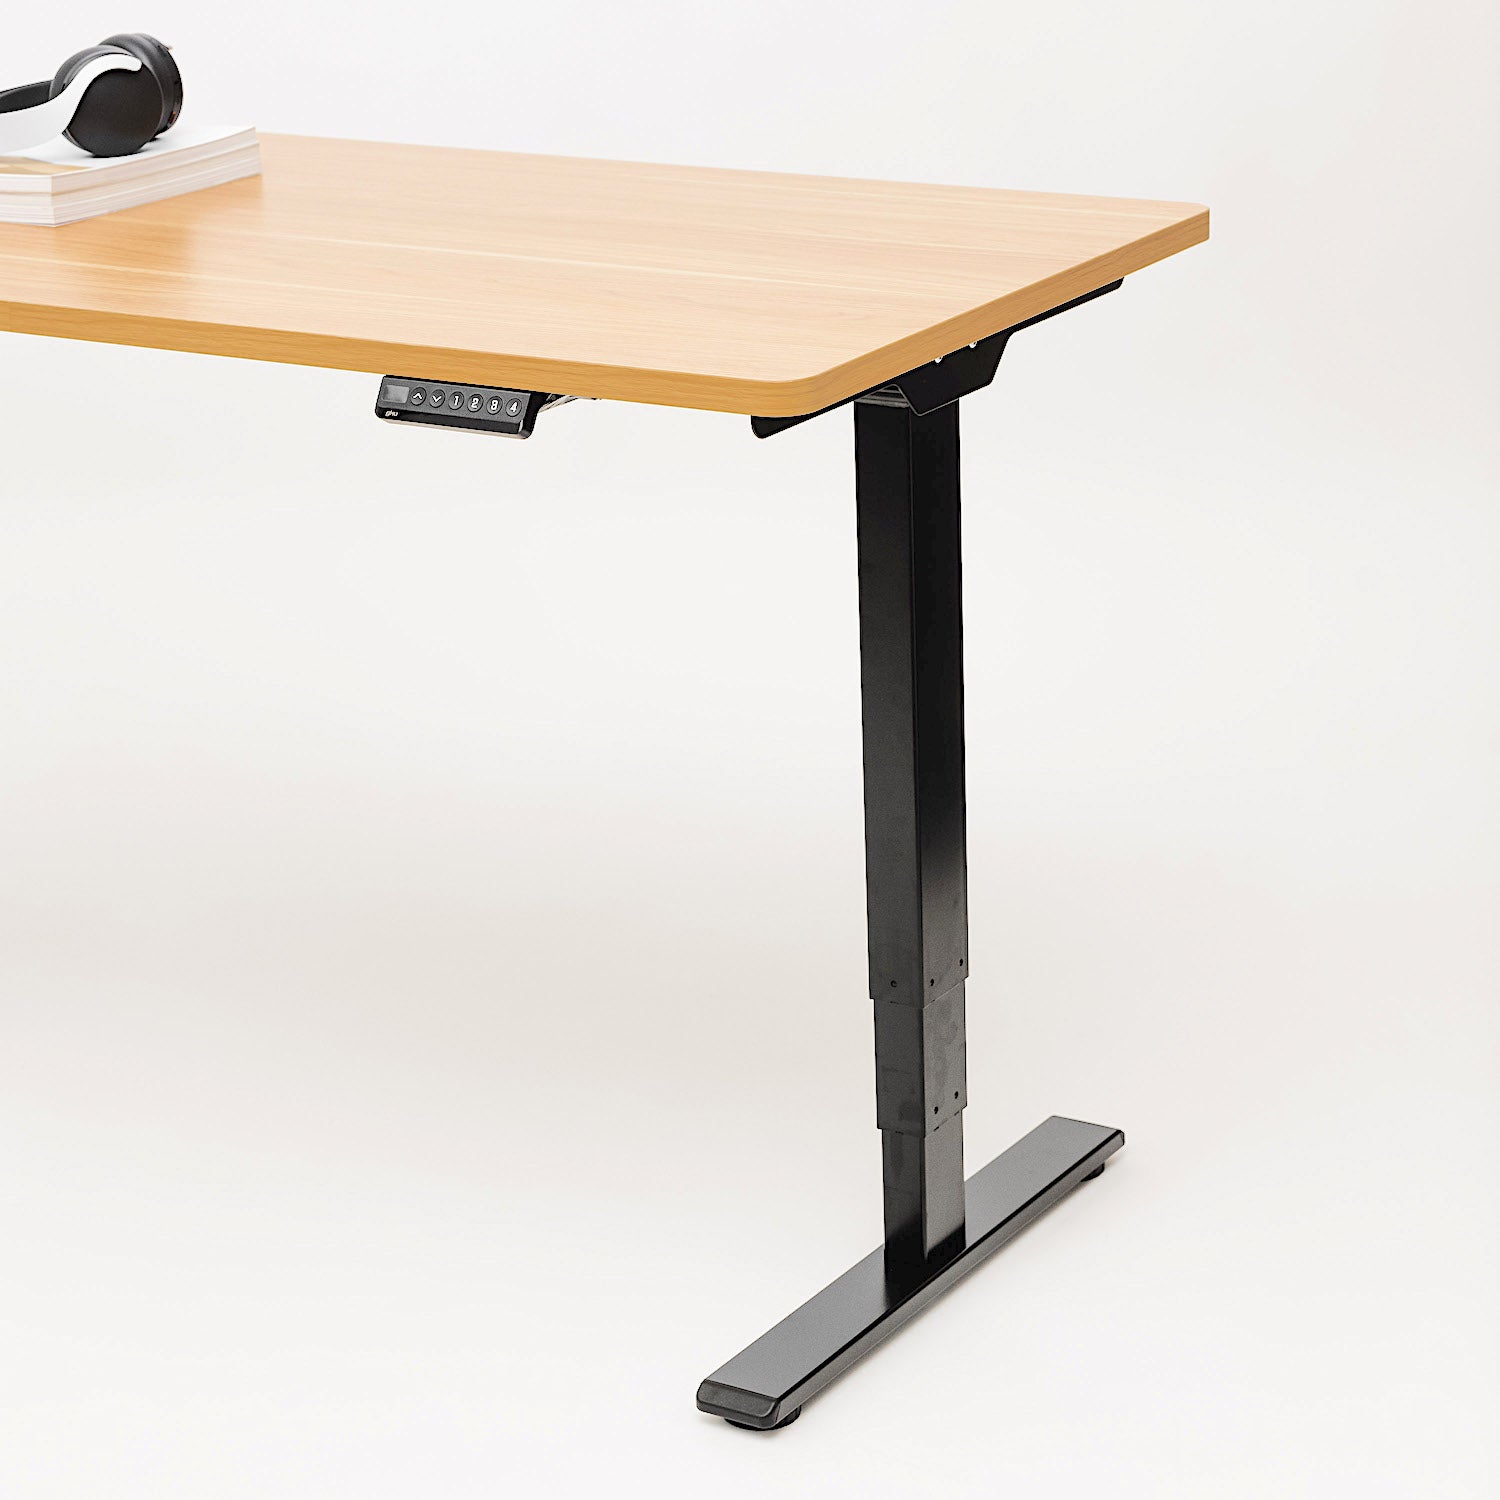 gku™ ProLift V2: Electric Sit Stand Desk | gku.